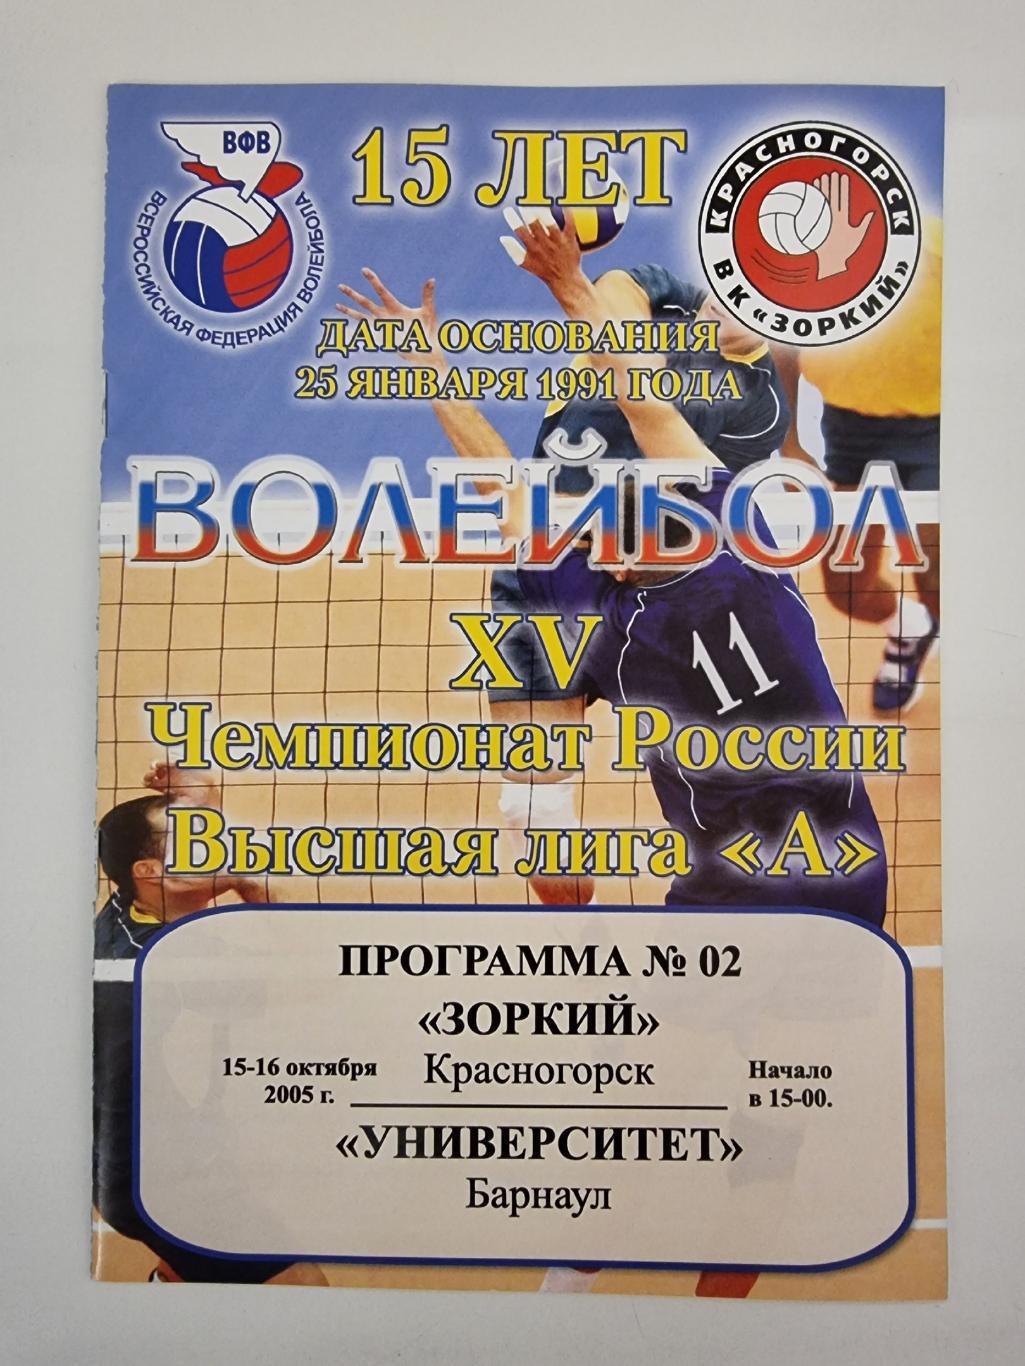 Волейбол. Зоркий Красногорск - Университет Барнаул 15/16 октября 2005